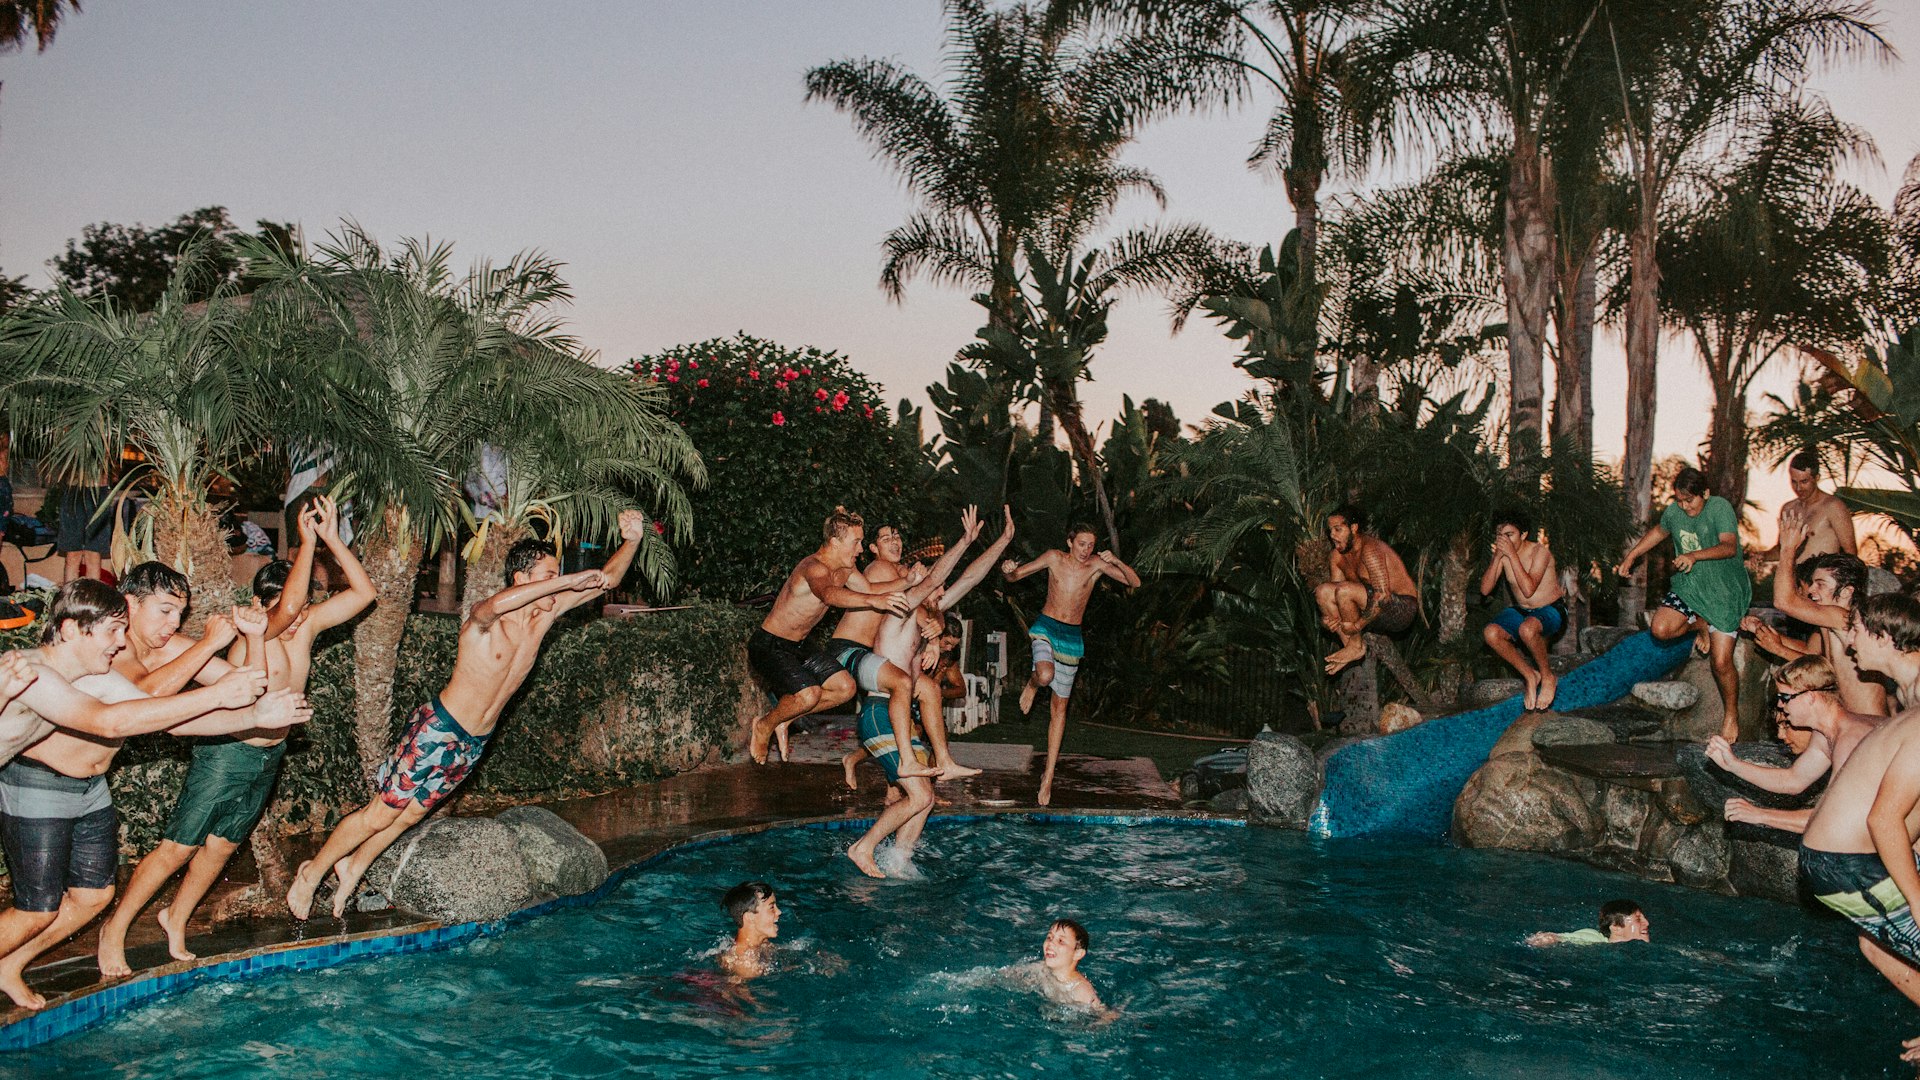 Bild von Gästen, die am Pool entspannen oder an einer Aktivität teilnehmen